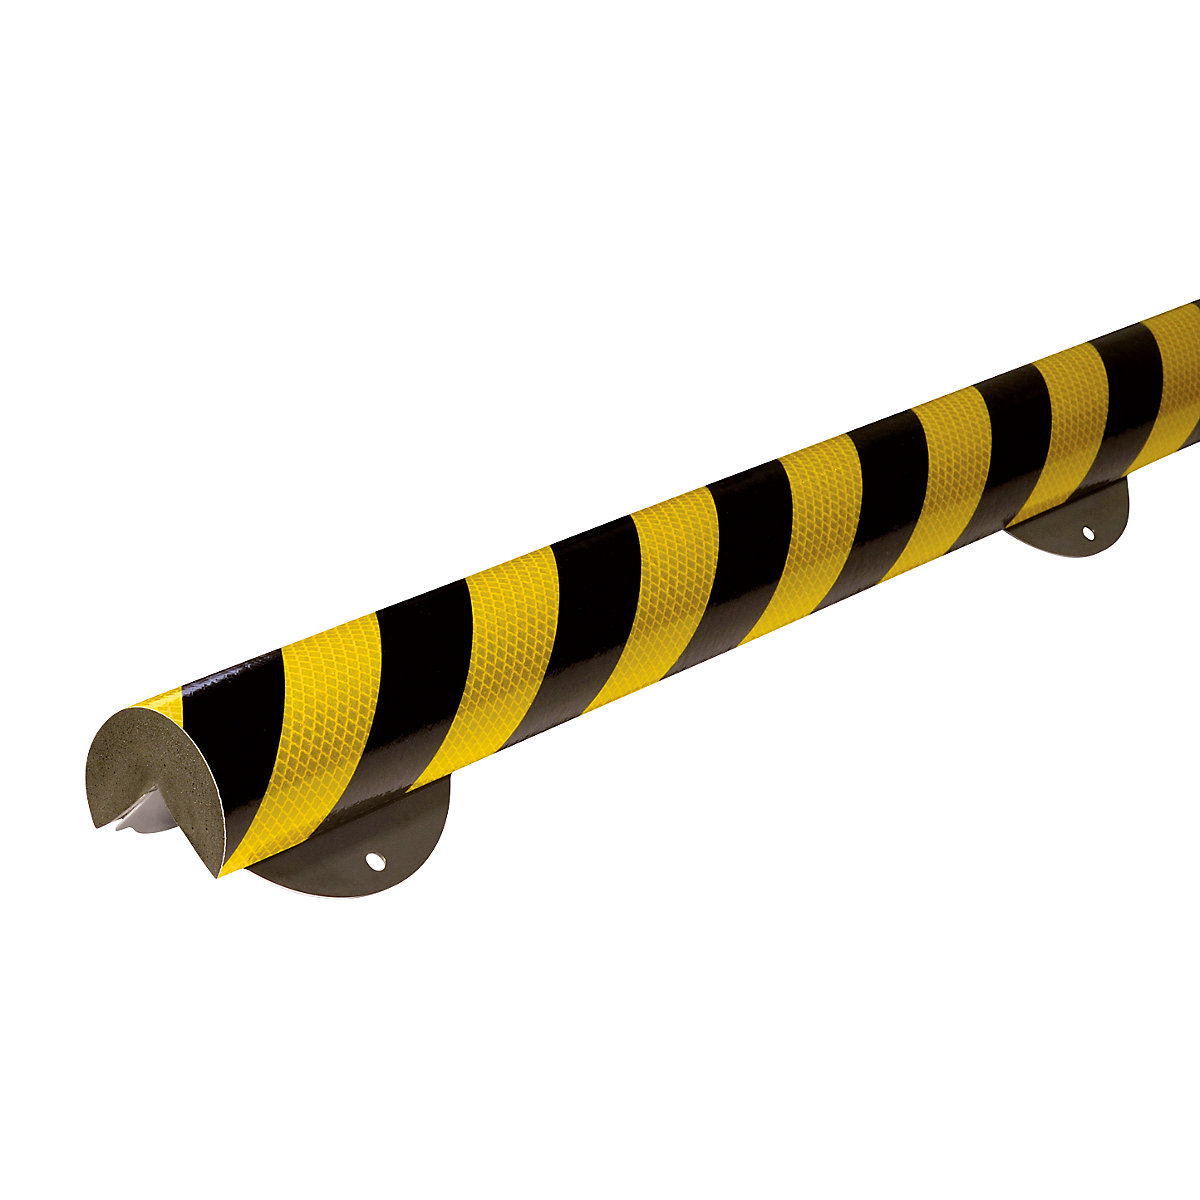 Proteção de cantos Knuffi® com calha de montagem – SHG, tipo A+, unidade de 1 m, preto/amarelo, refletor-11